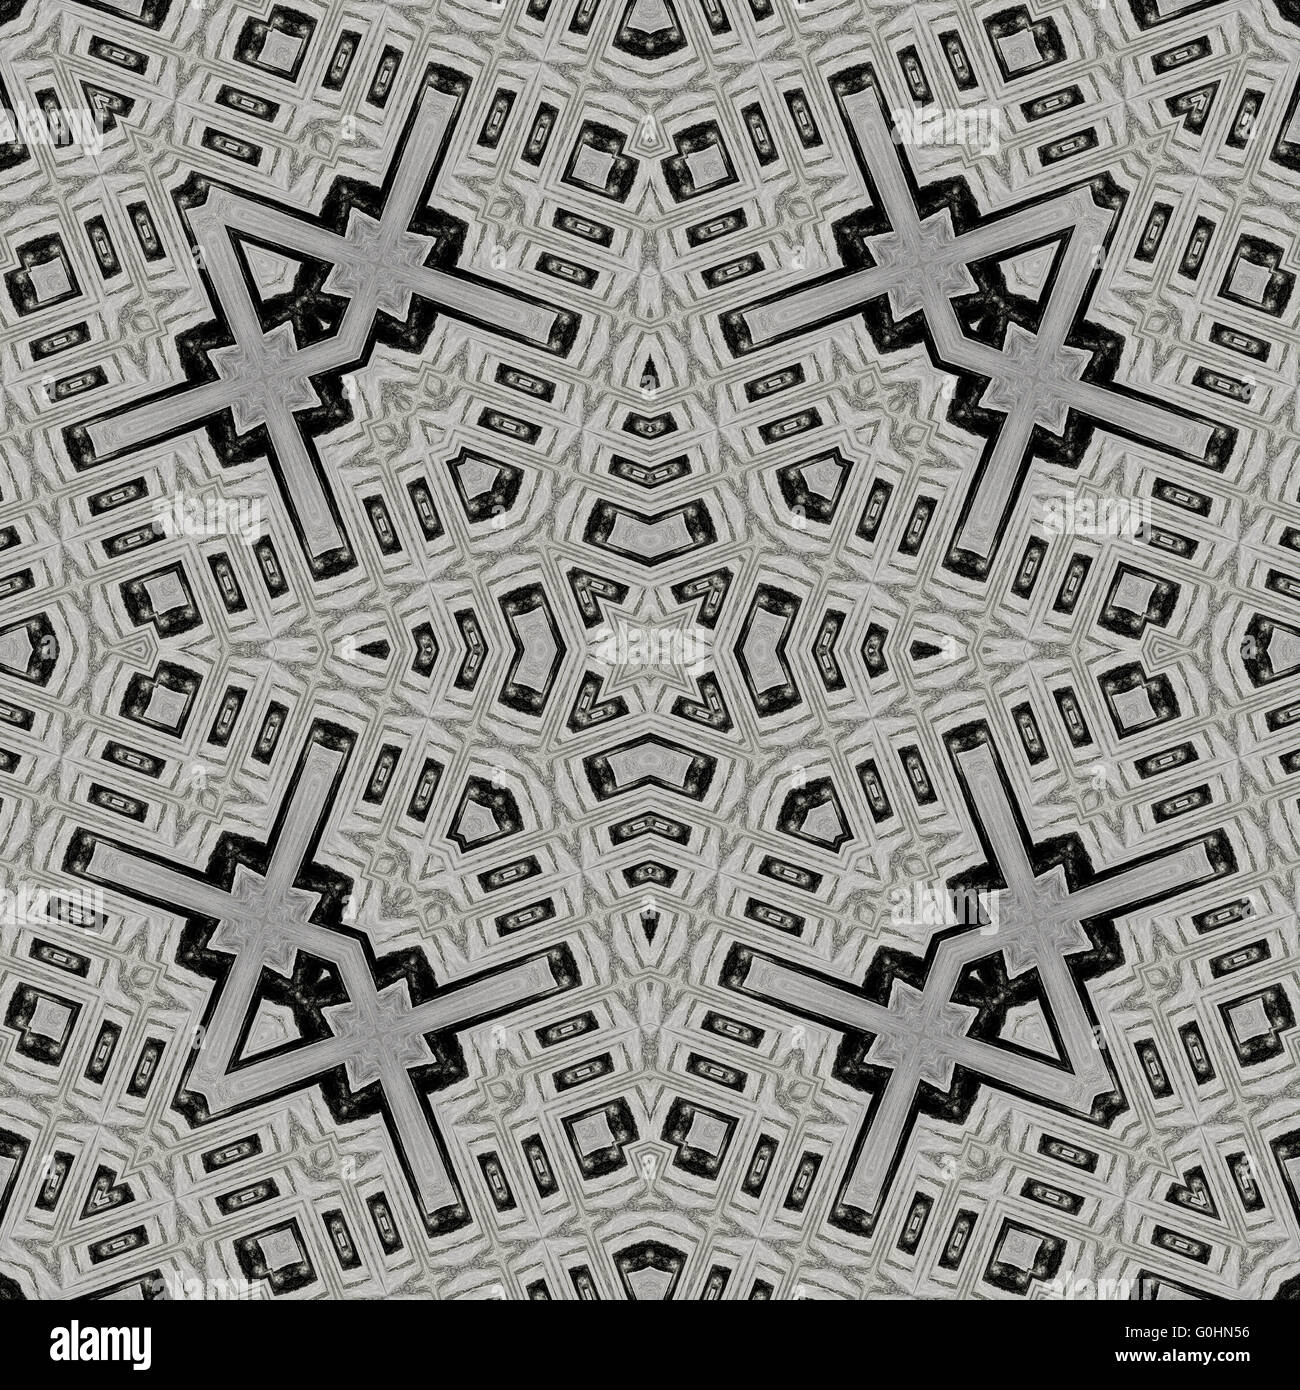 Seamless sfondo caleidoscopica pattern di piastrelle disegnate con nero matita morbida basato sulla texture in legno Foto Stock